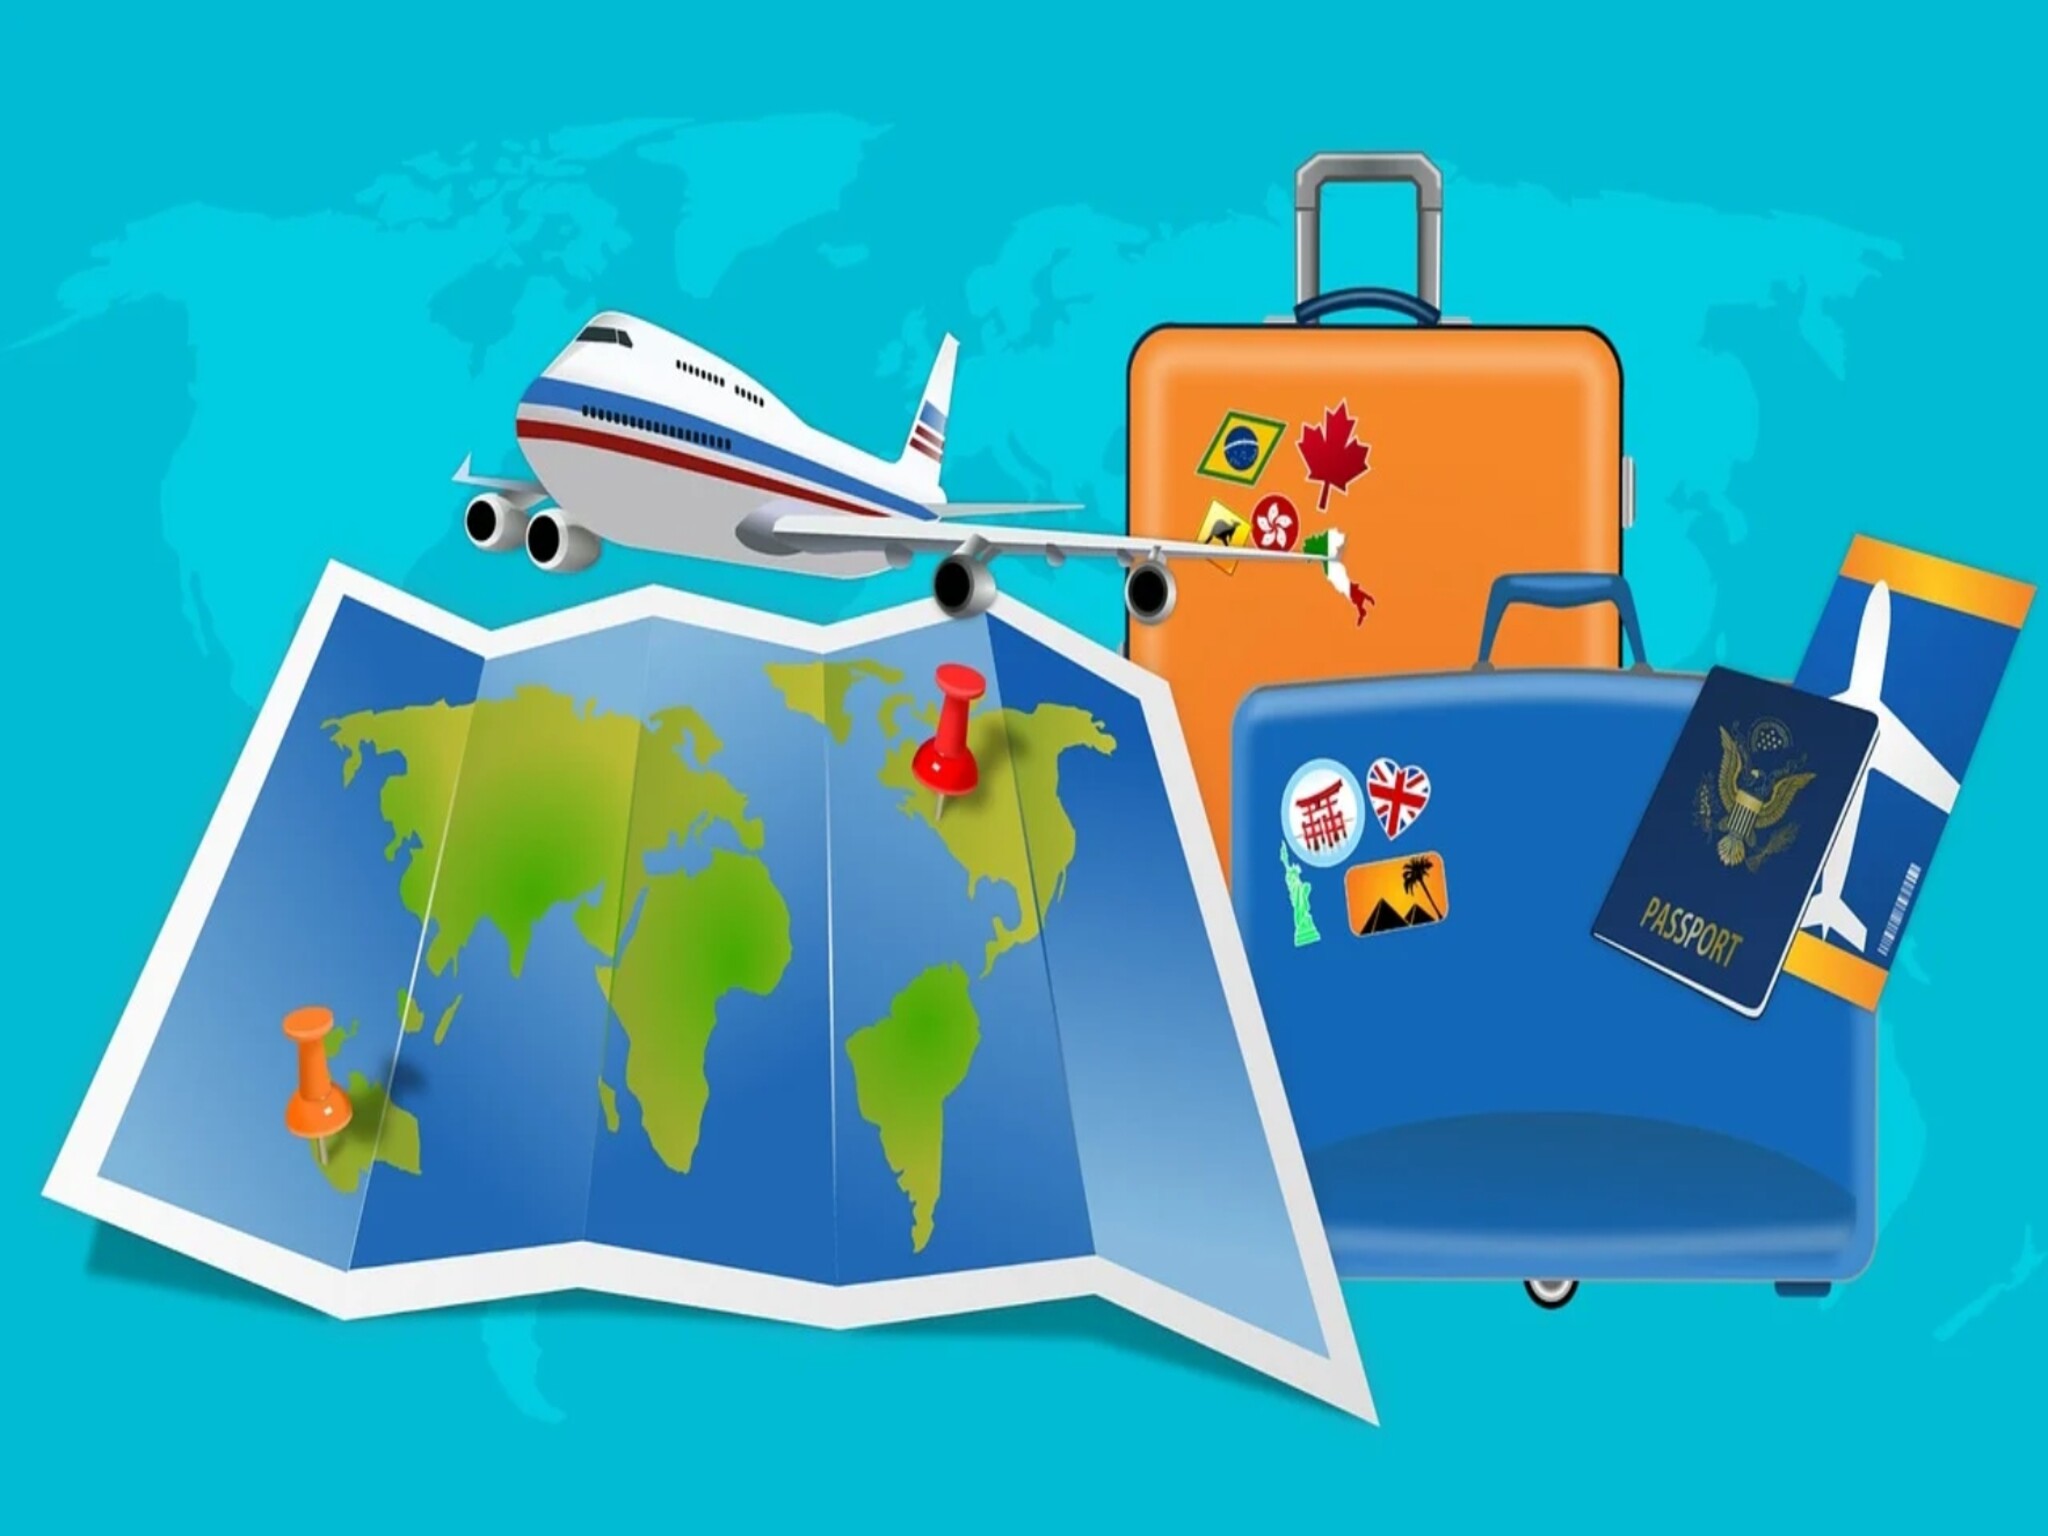 الإمارات تتيح وجهات سفر مميزة للمقيمين دون الحاجة إلى تأشيرة دخول